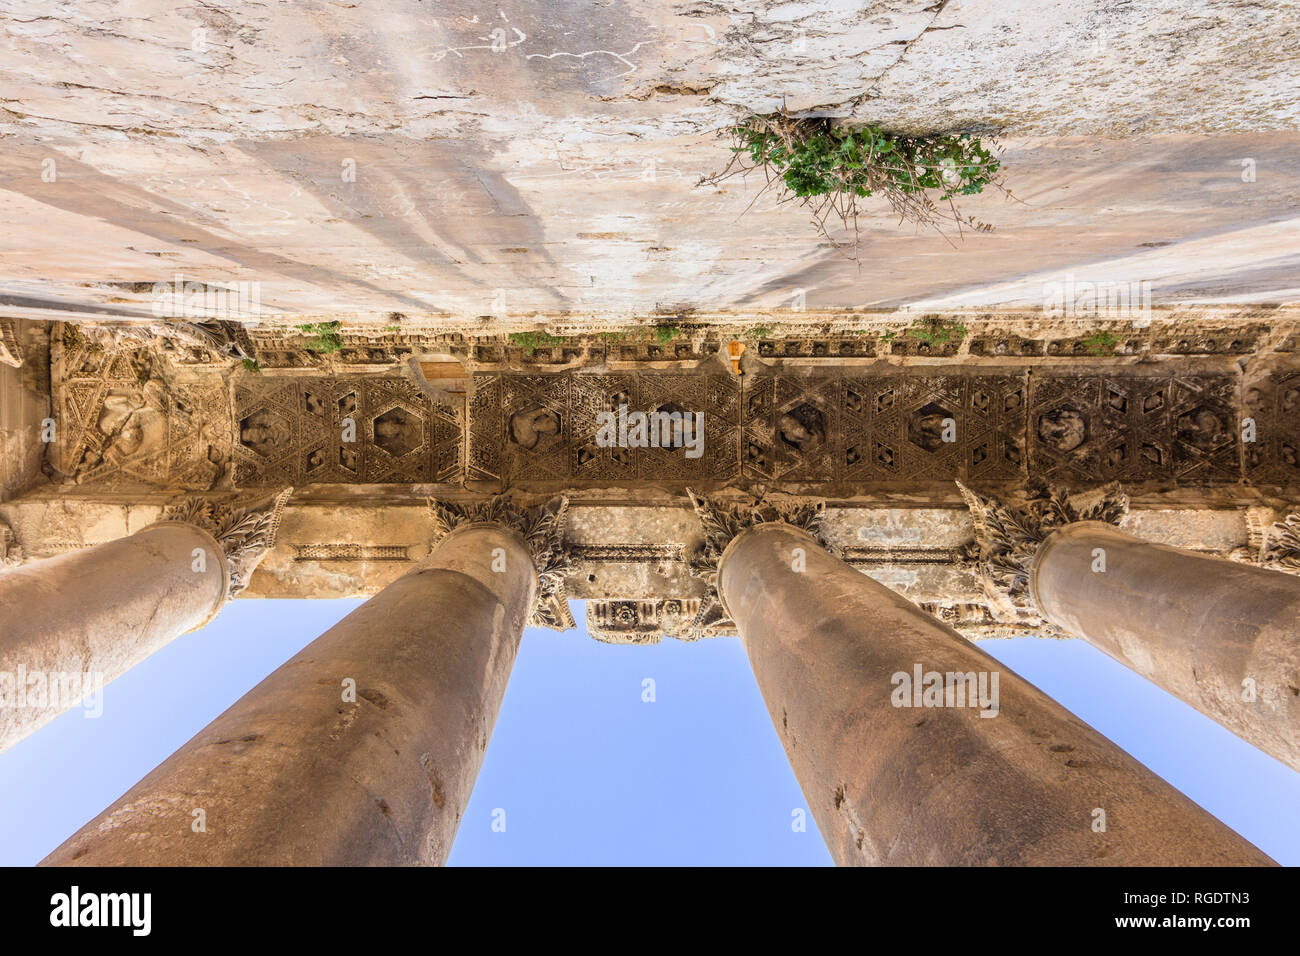 El techo en el peristilo del templo de Baco, Heliópolis ruinas romanas, Baalbek, Líbano Foto de stock